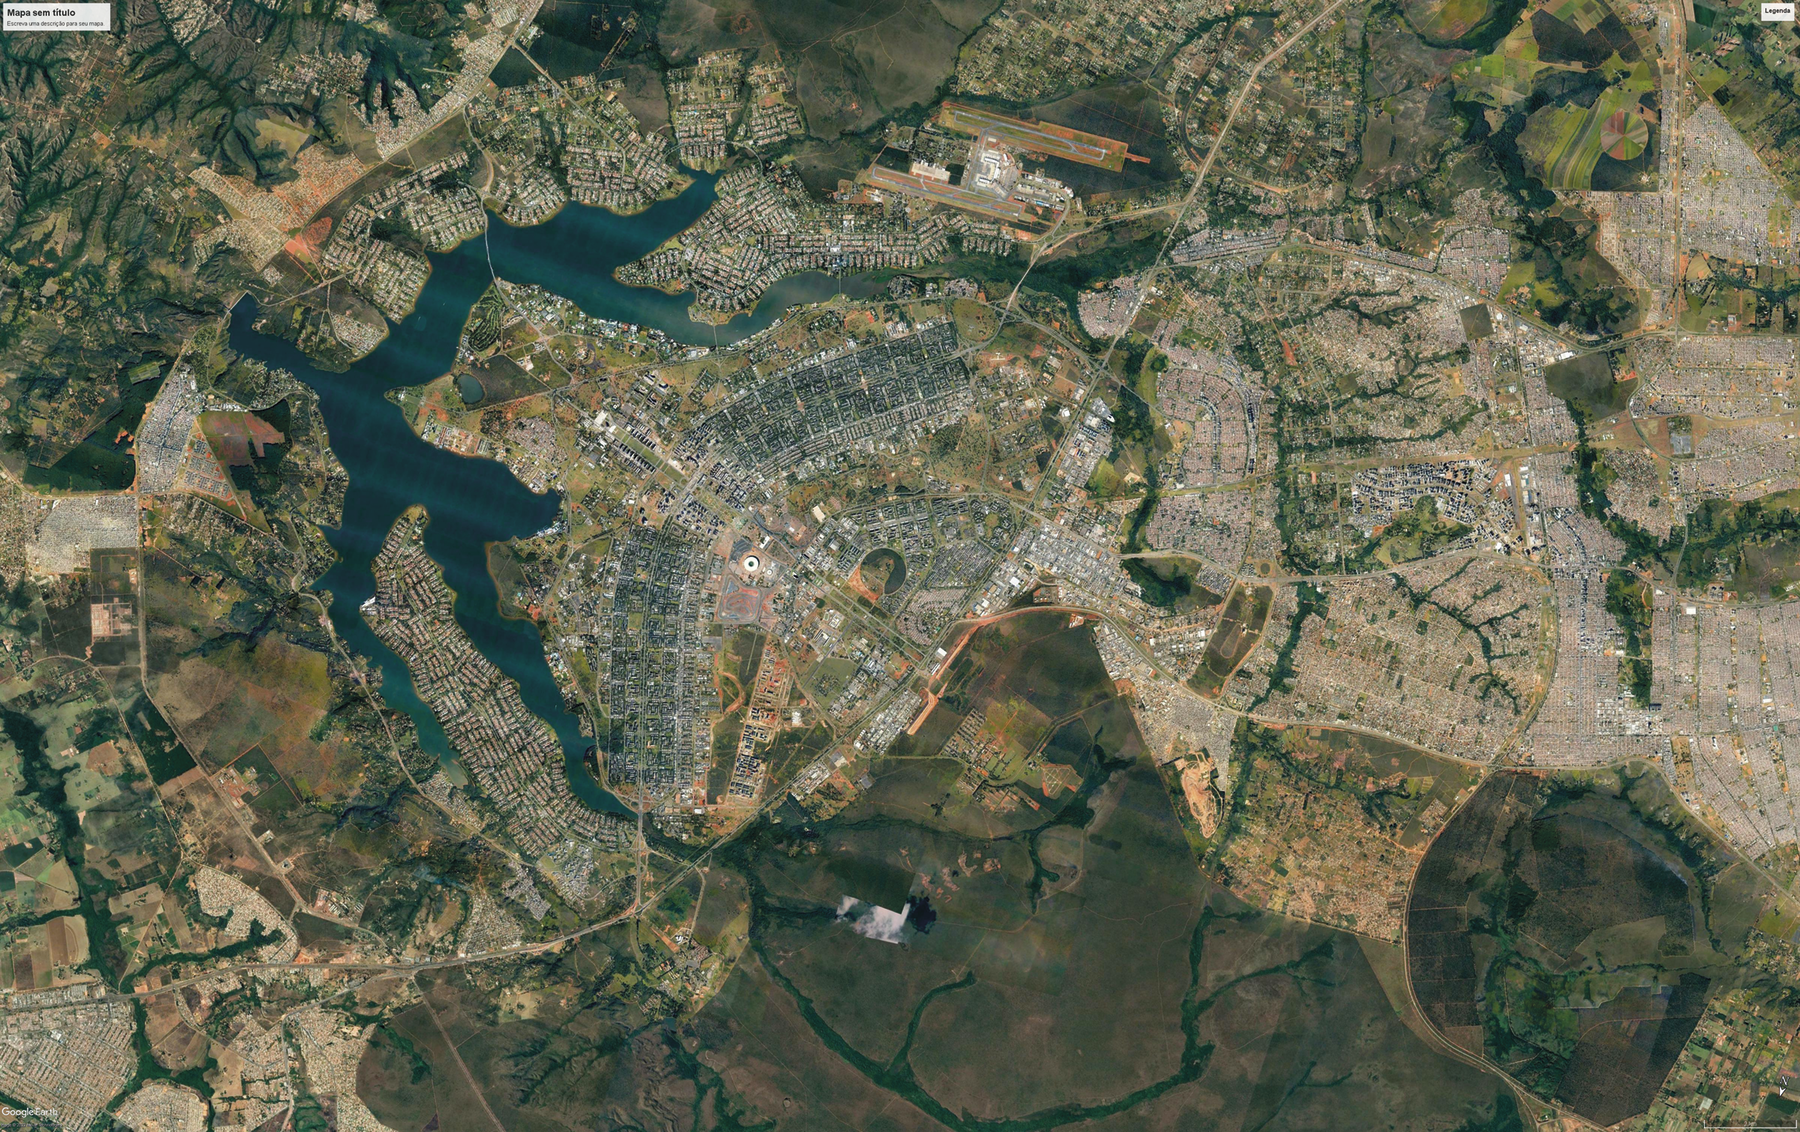 Fotografia. Vista aérea. Uma cidade com construções com um formato semelhante a asas. Ao redor há outras construções, áreas cobertas por vegetação e rios.